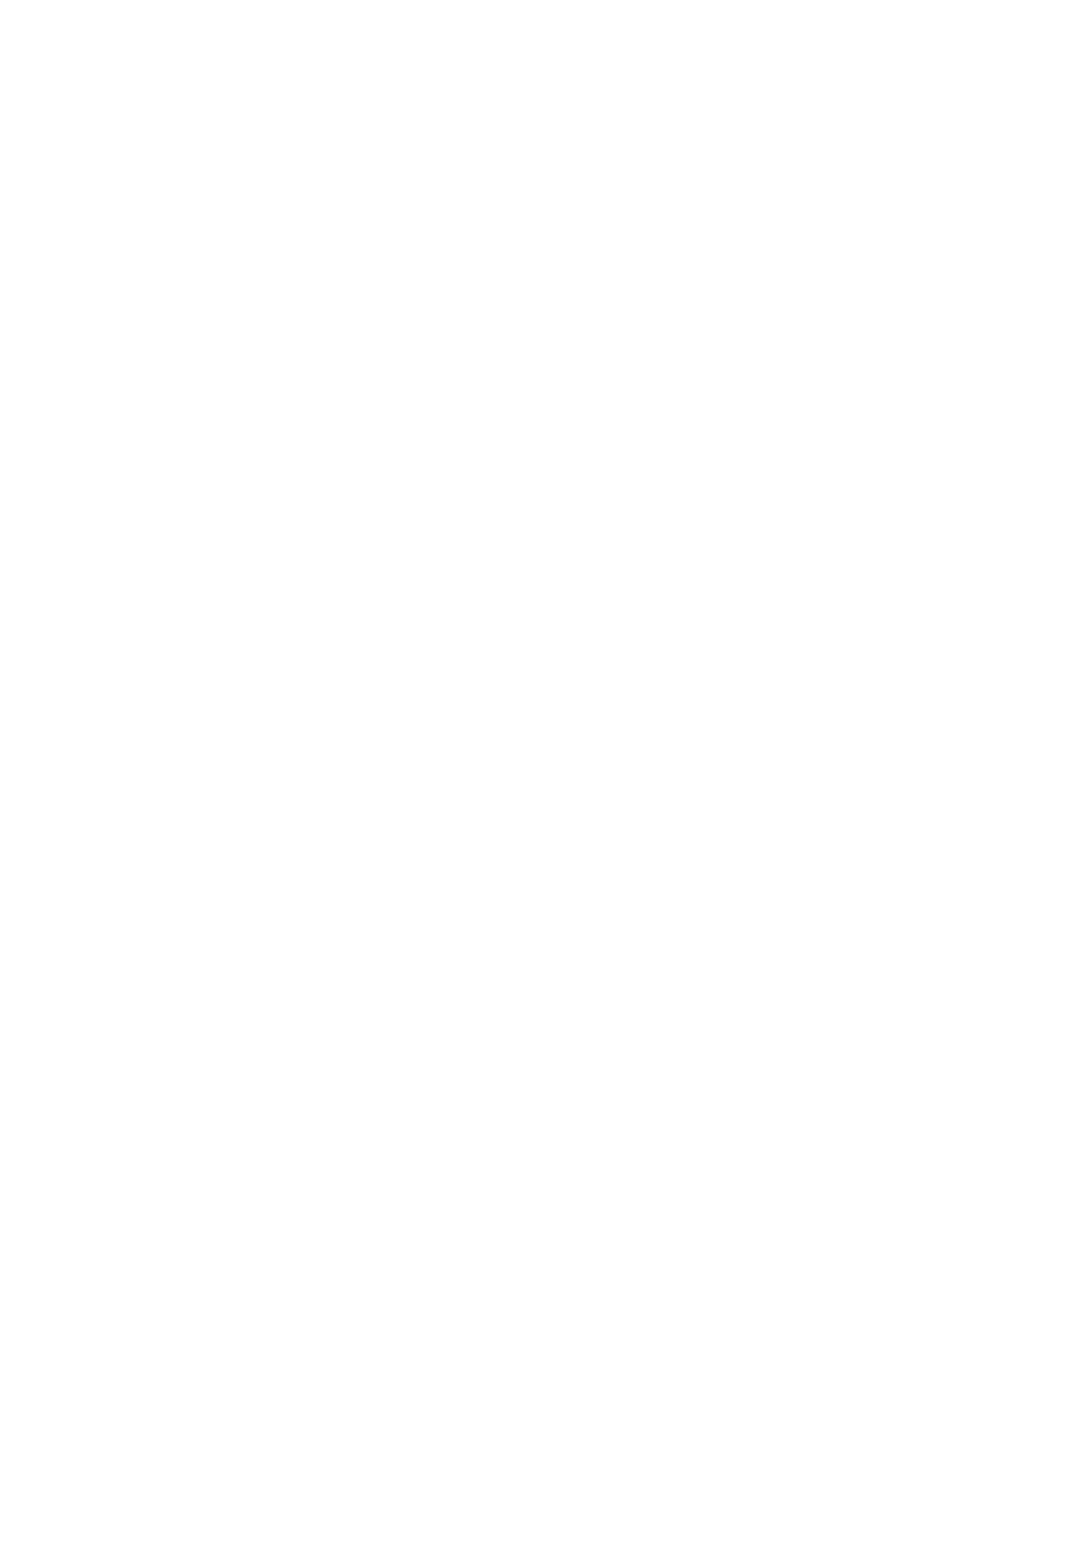 Figma logo for dark backgrounds (transparent PNG)